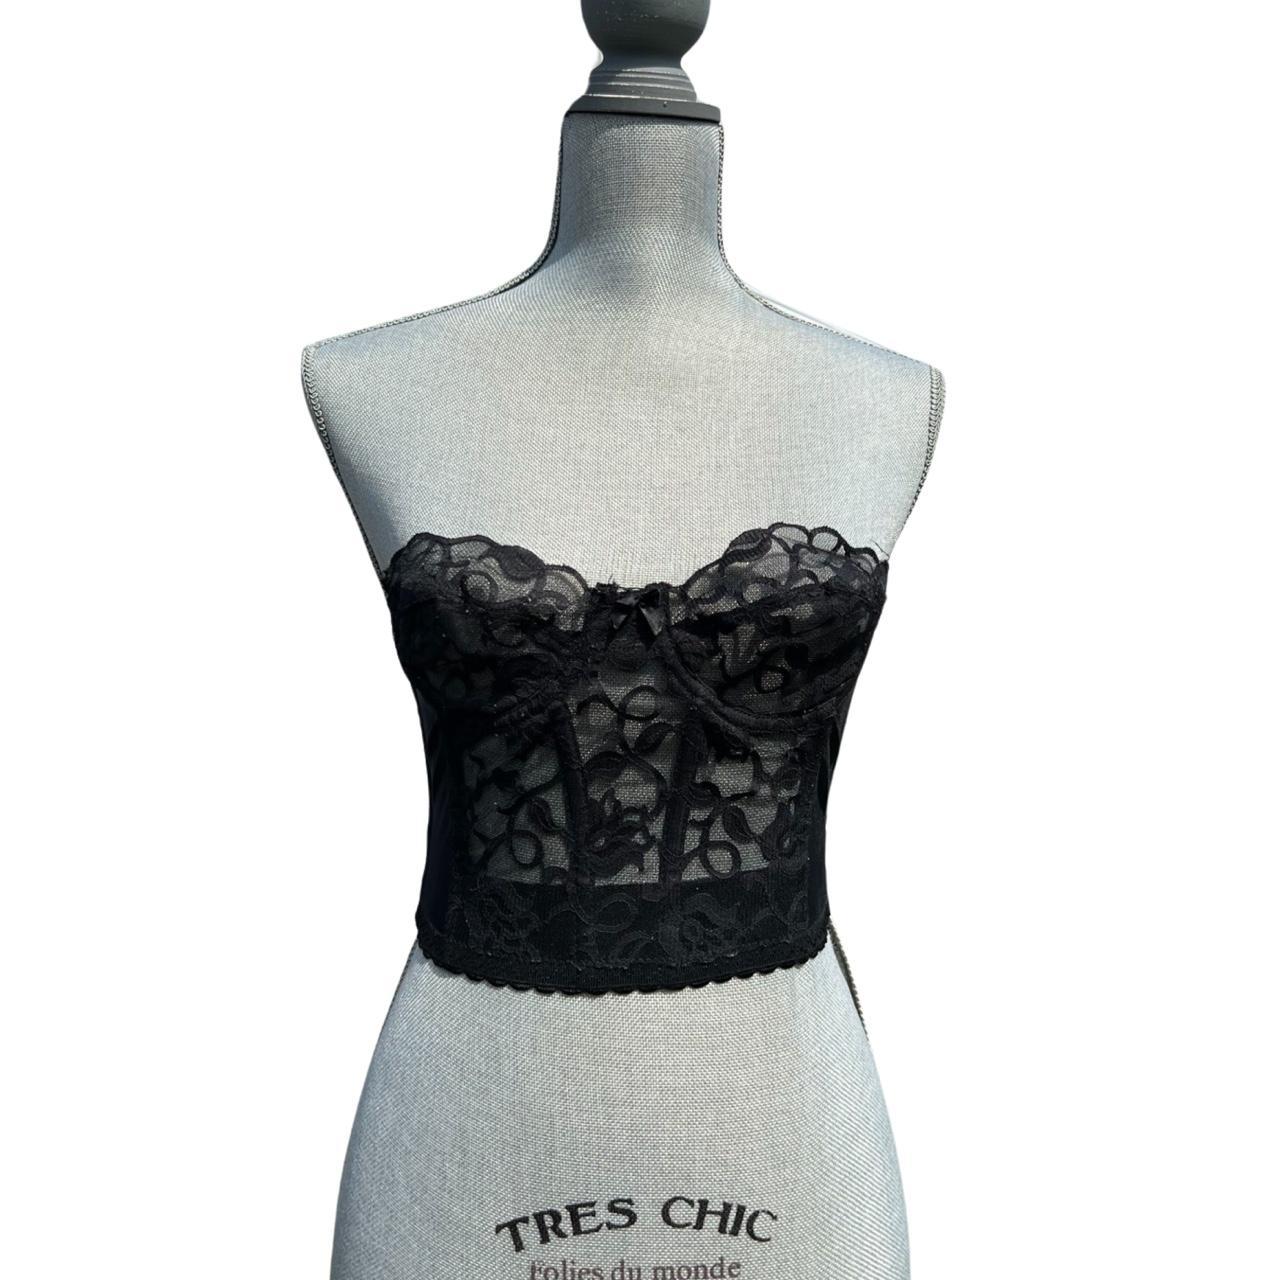 VICTORIA SECRET black floral corset size 32B never - Depop